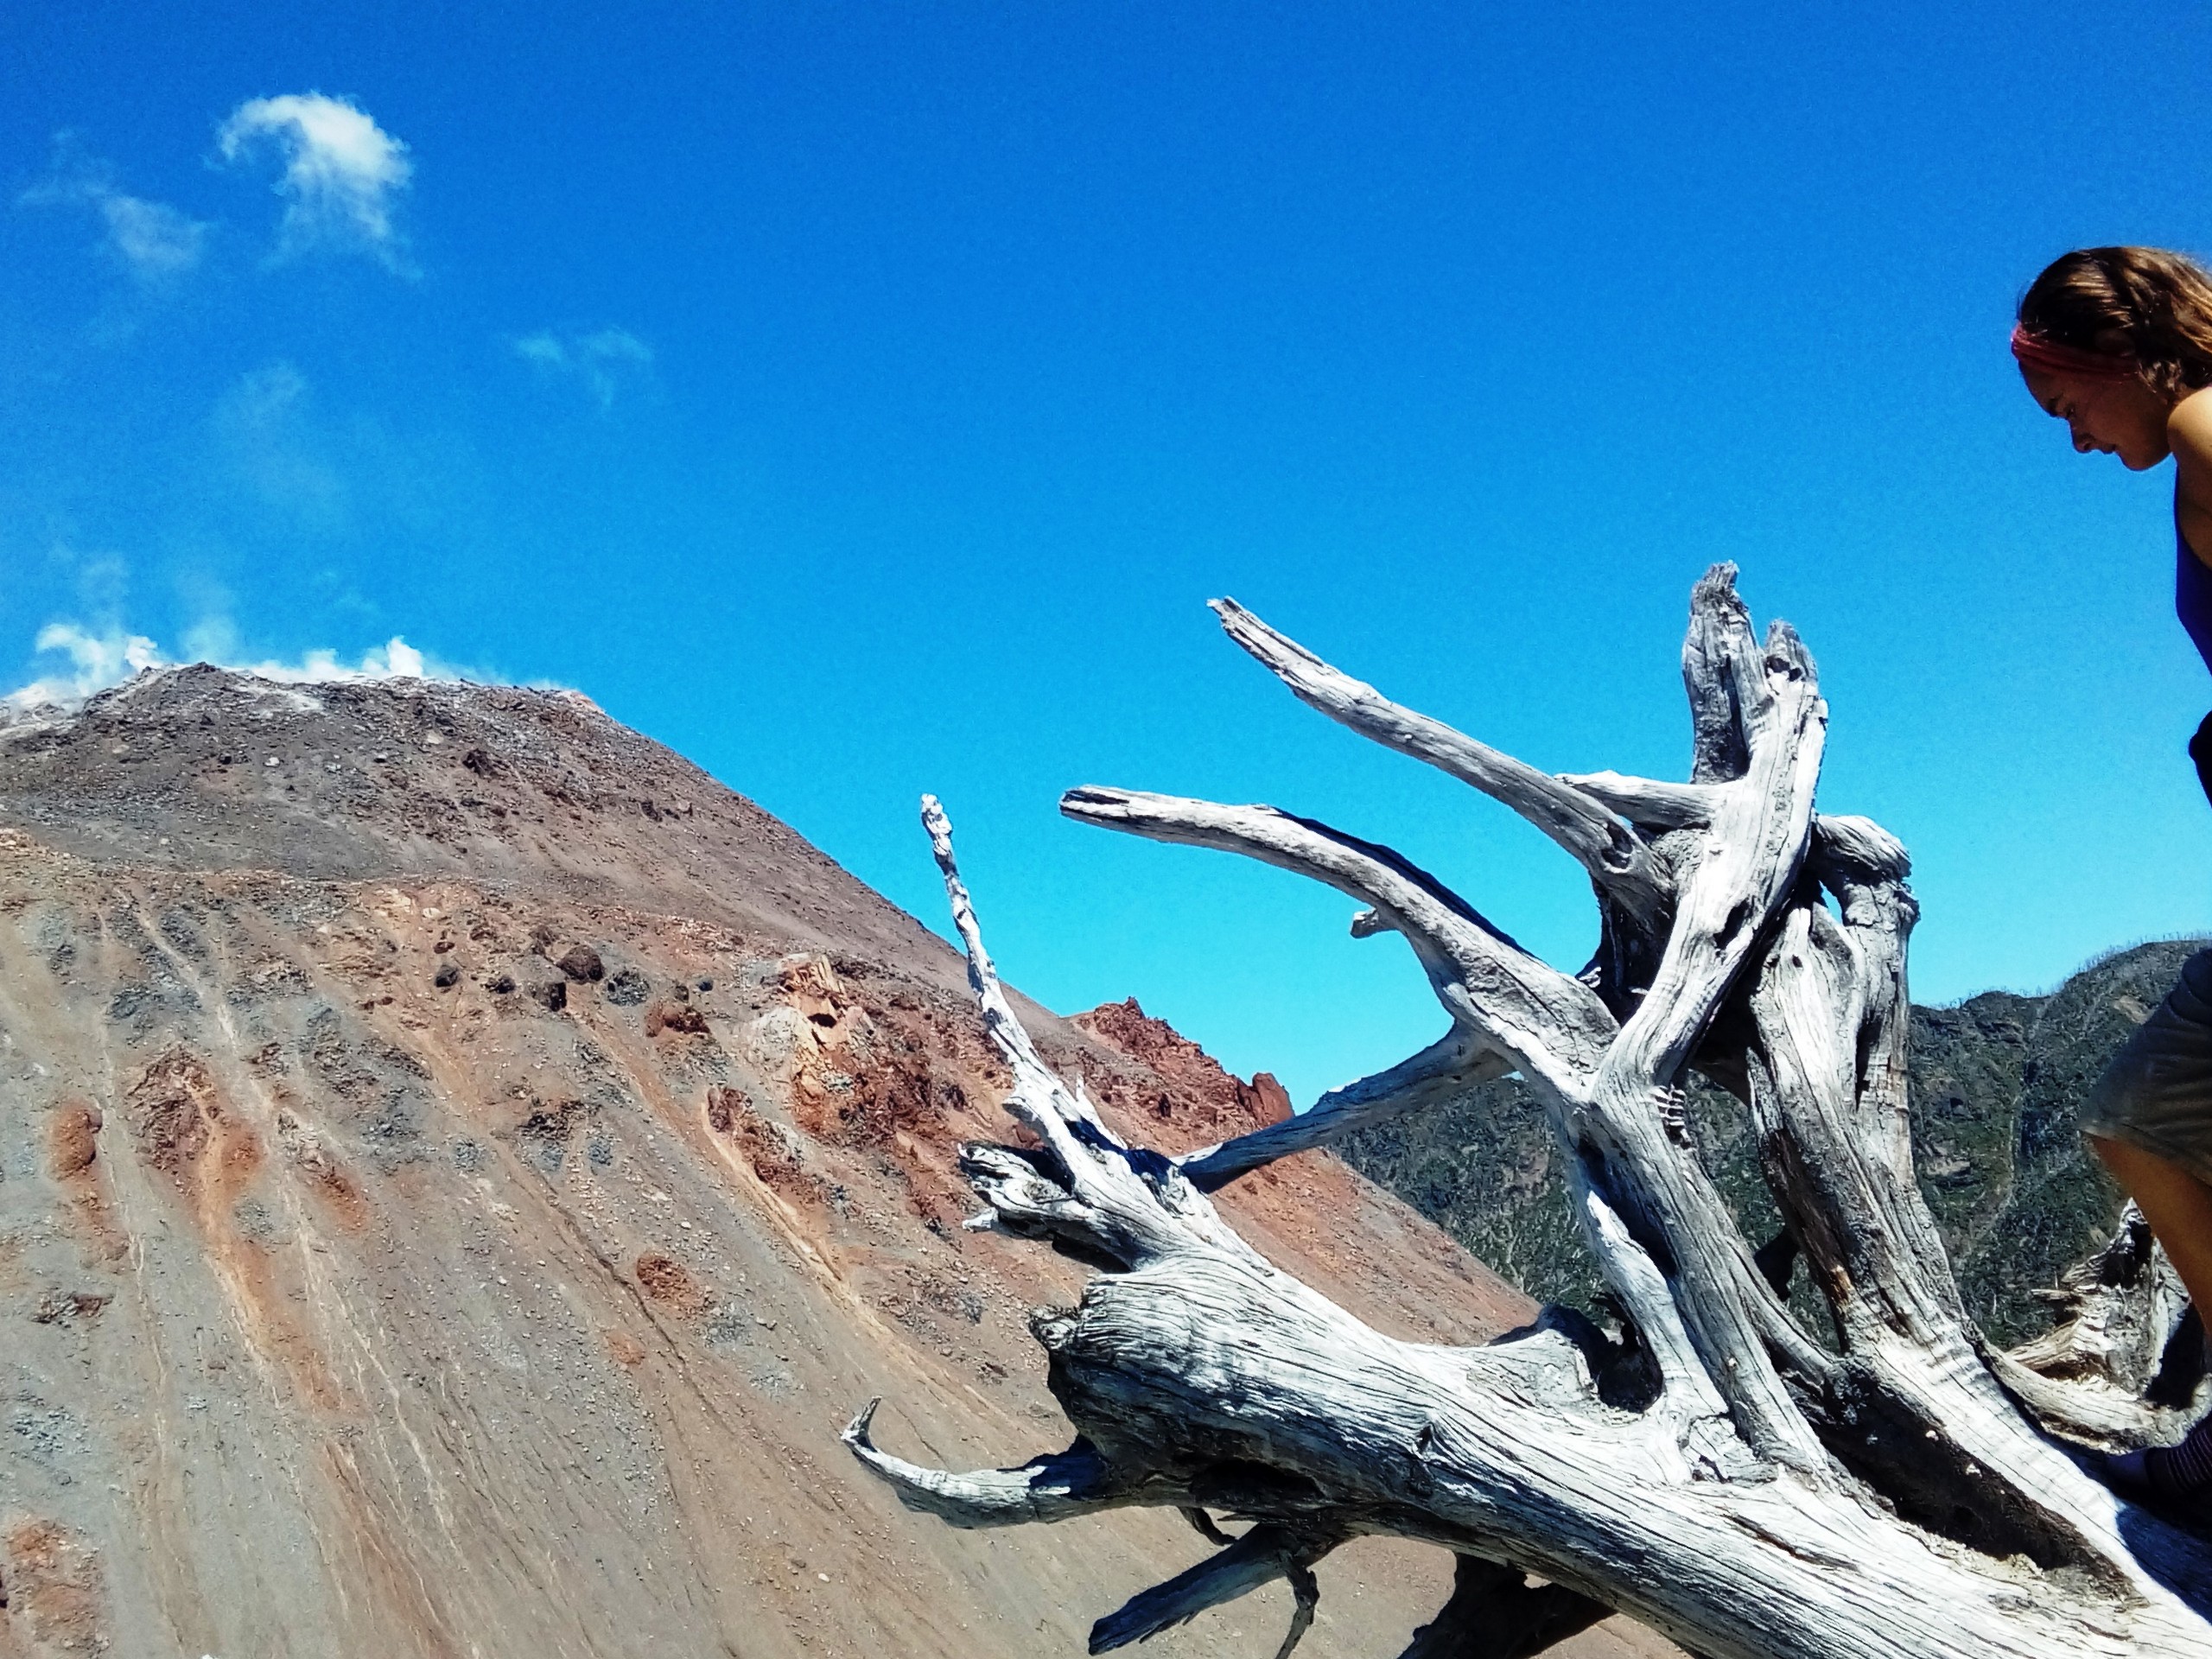 Chaiten volcano in Chile